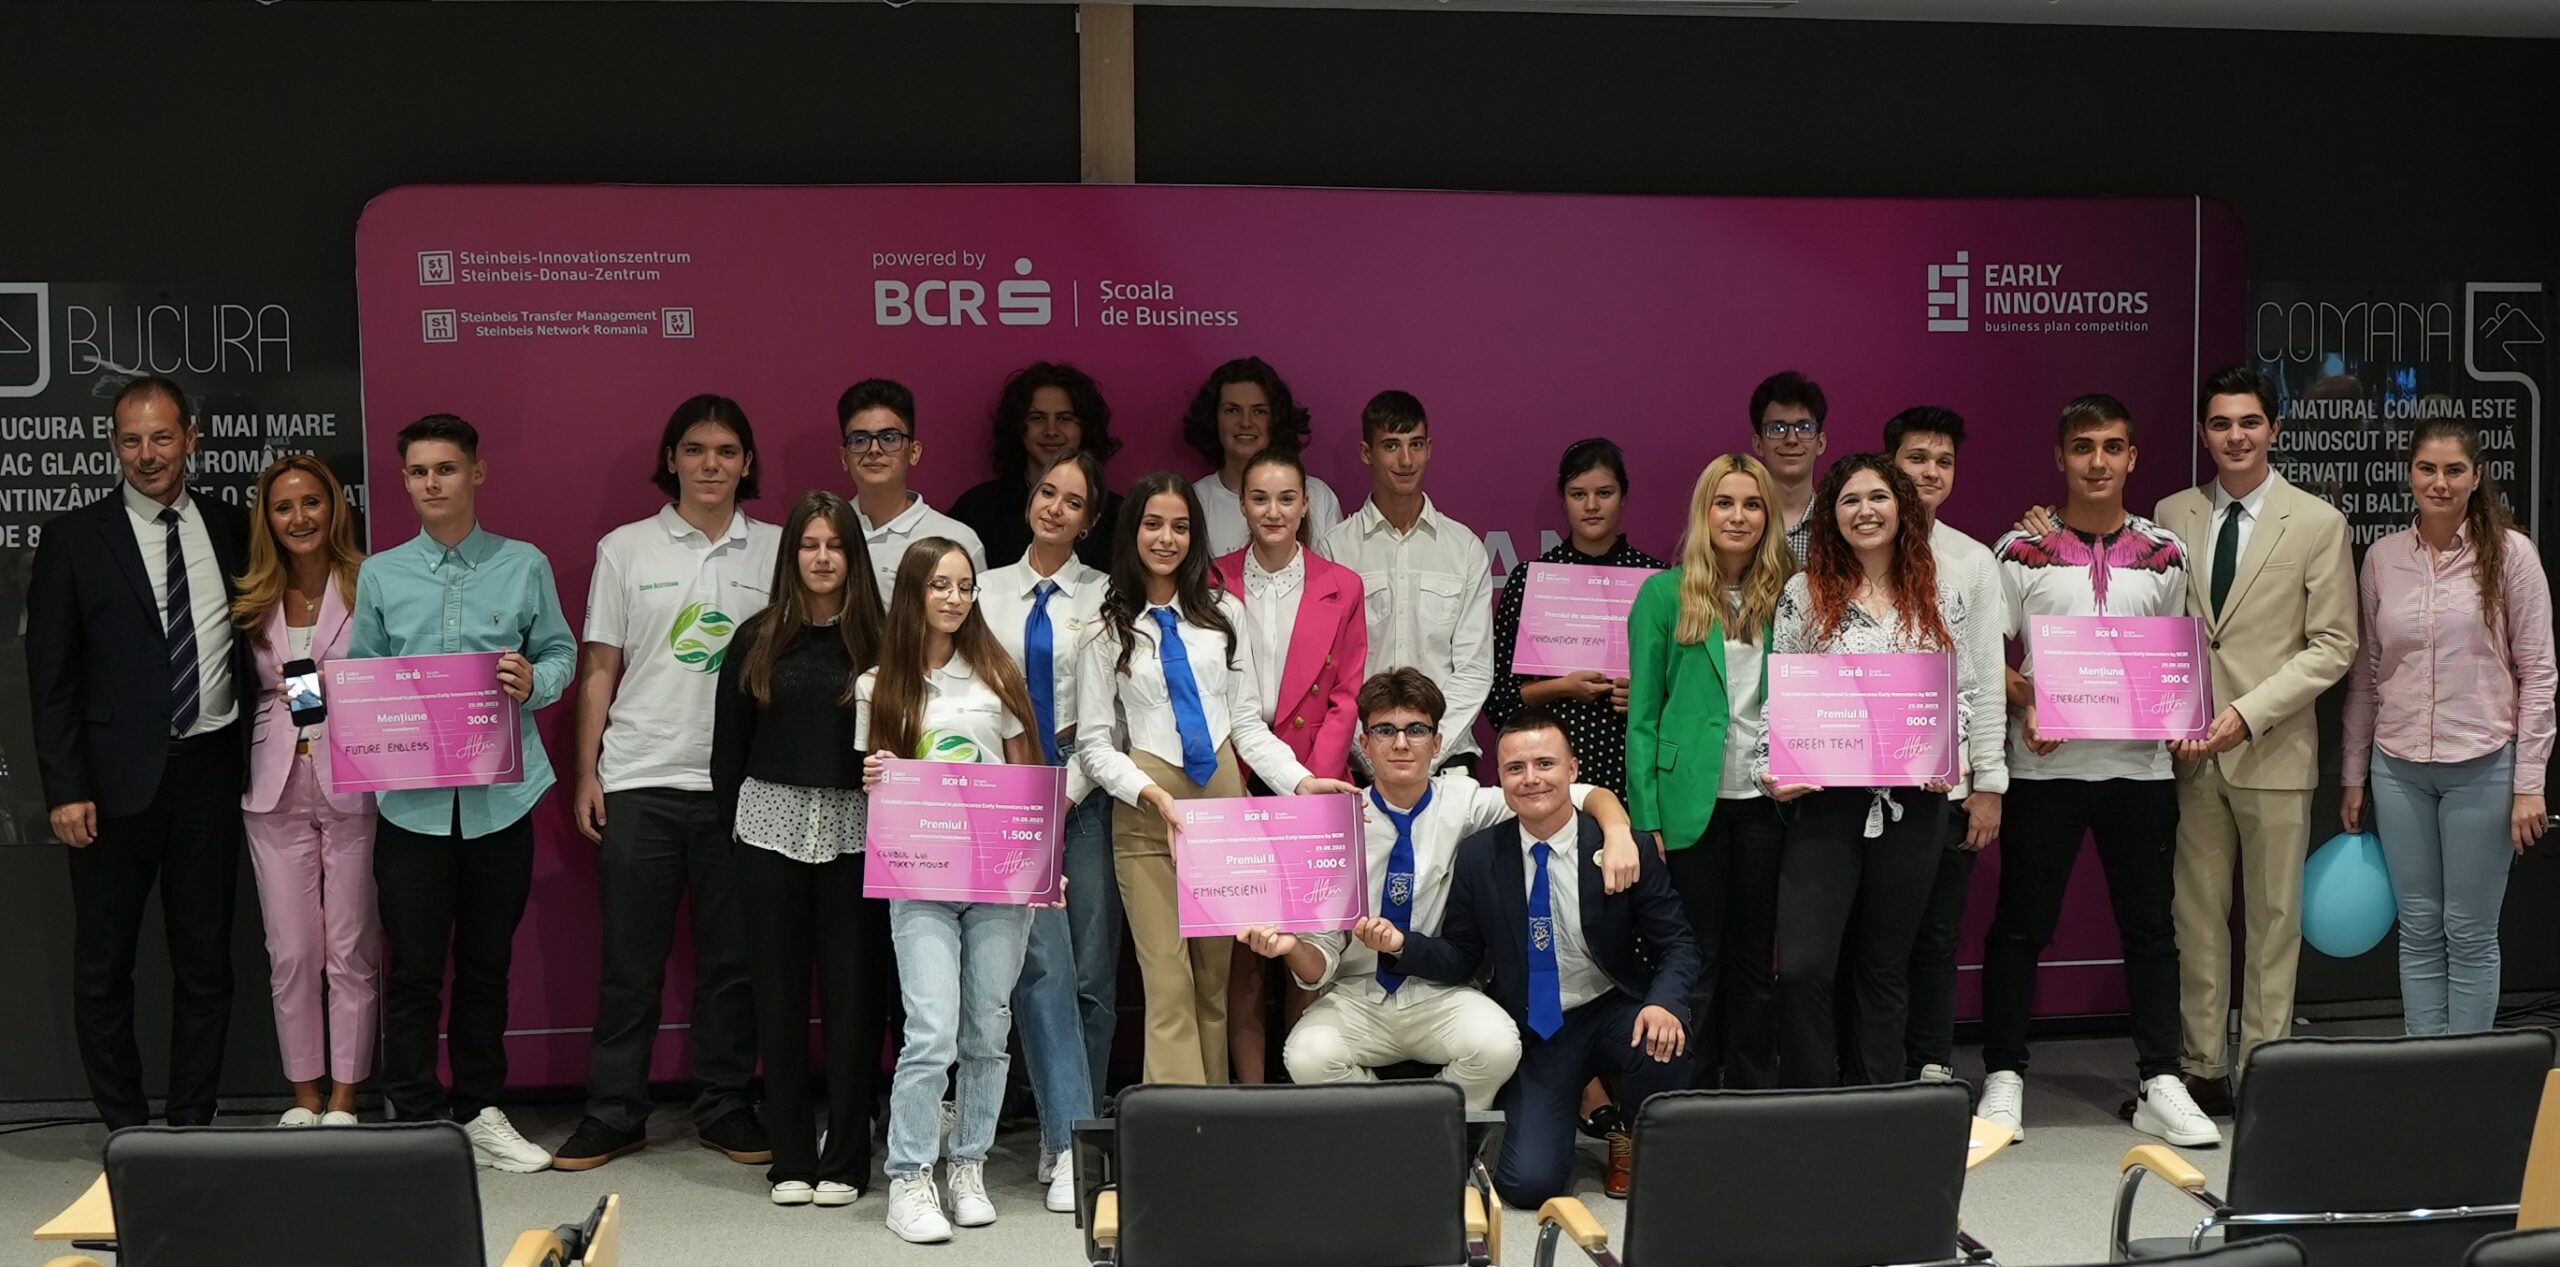 Nouă echipe de liceeni din șapte județe au câștigat premii totale de aproape 5.000 de euro în finala Early Innovators Business Plan Competition, cea mai mare competiție națională de antreprenoriat susținută de BCR Școala de Business